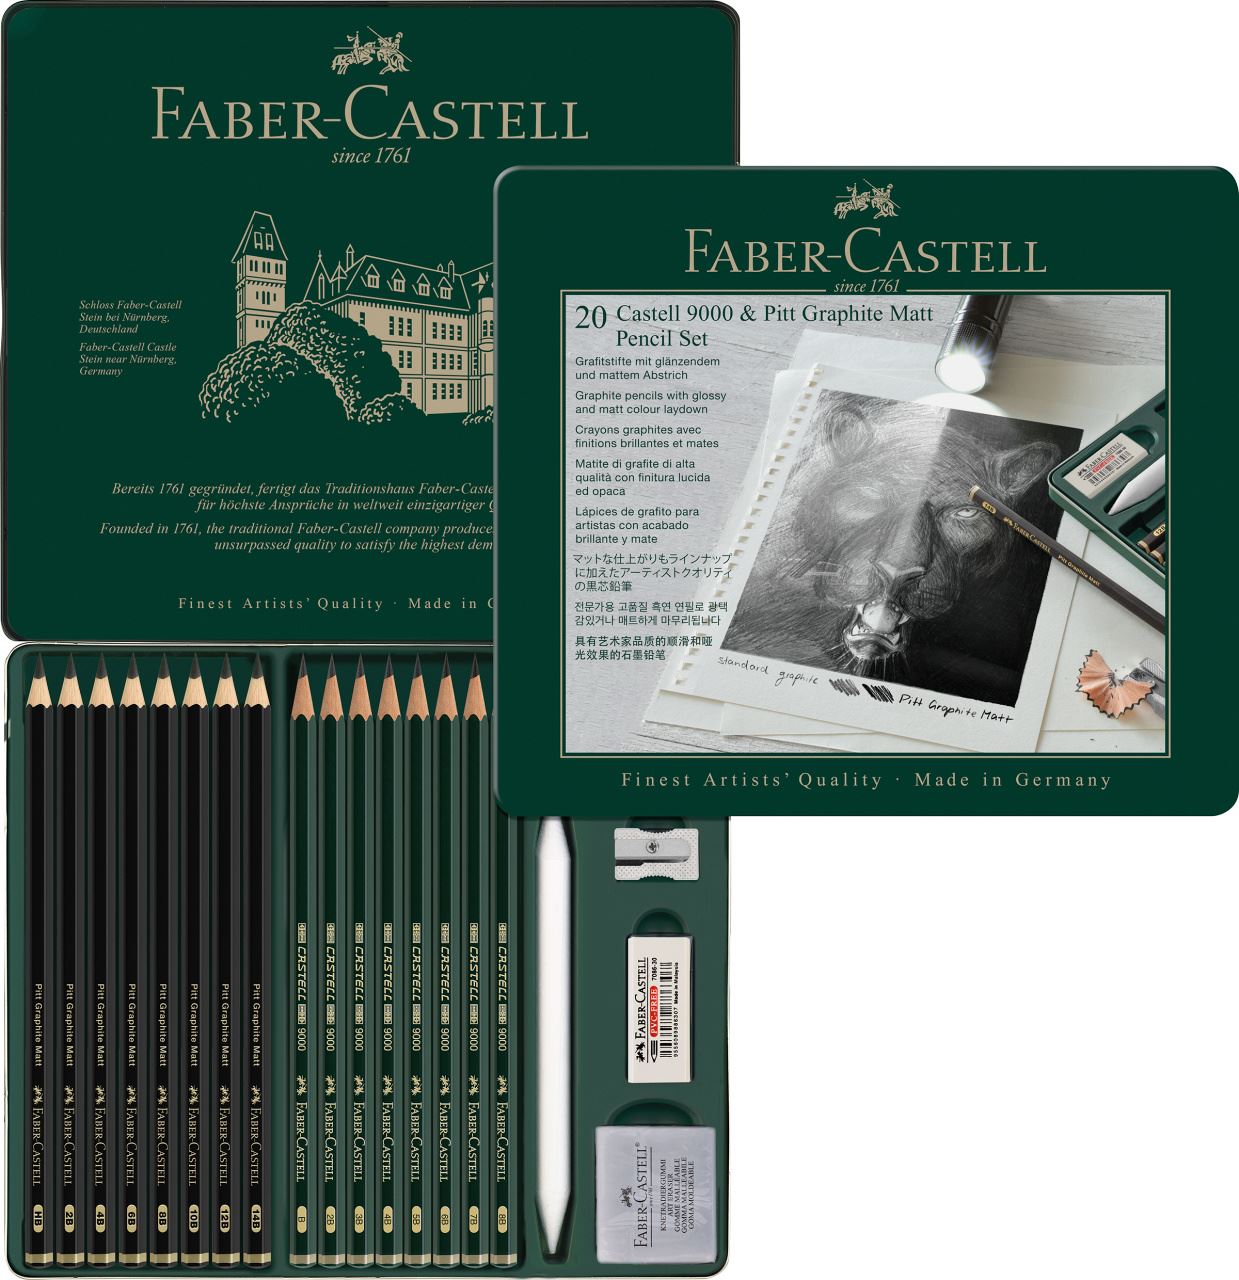 Faber-Castell - Crayons Pitt Graphite Matt et Castell 9000, boîte métal